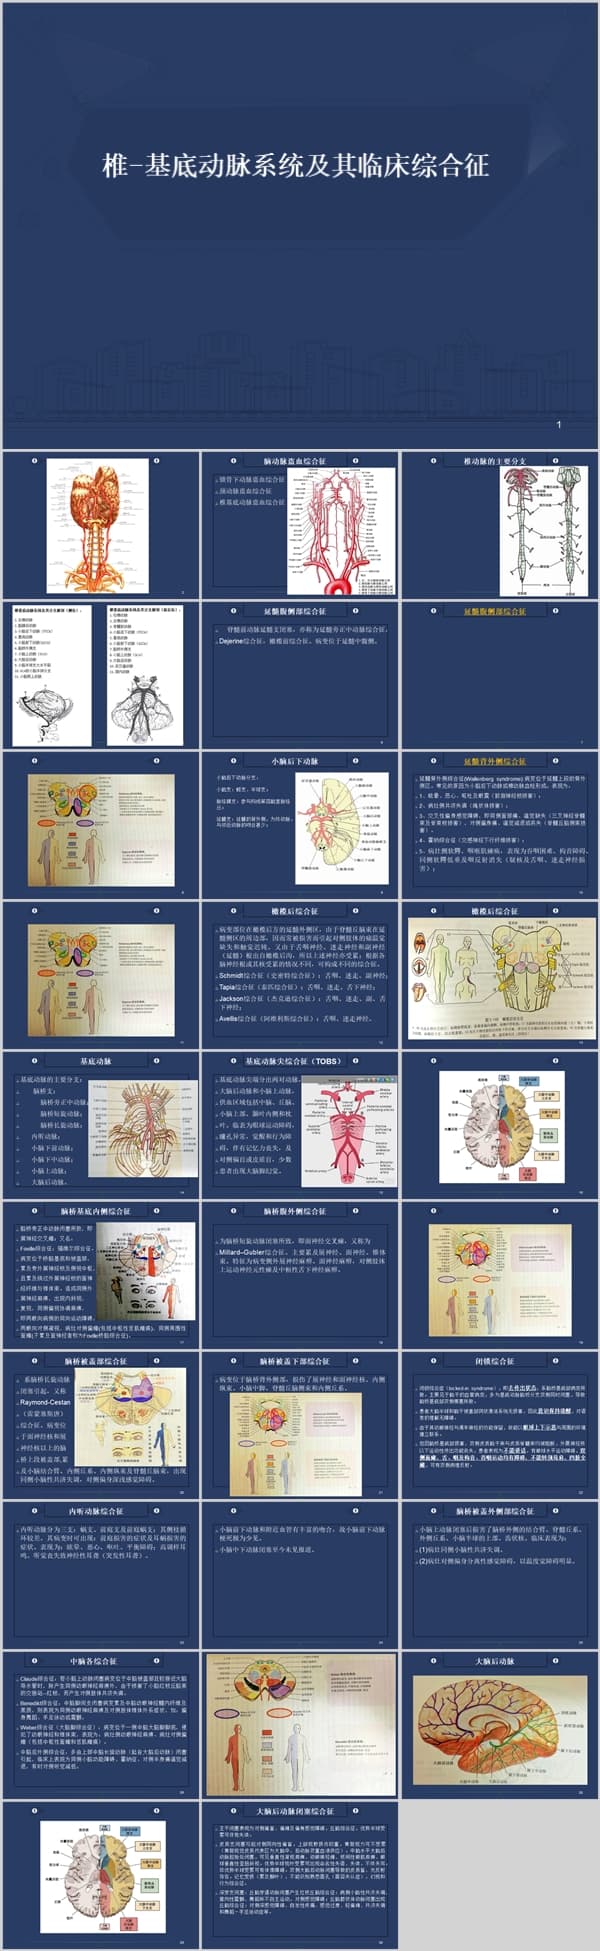 椎-基底动脉系统及其临床综合征.ppt